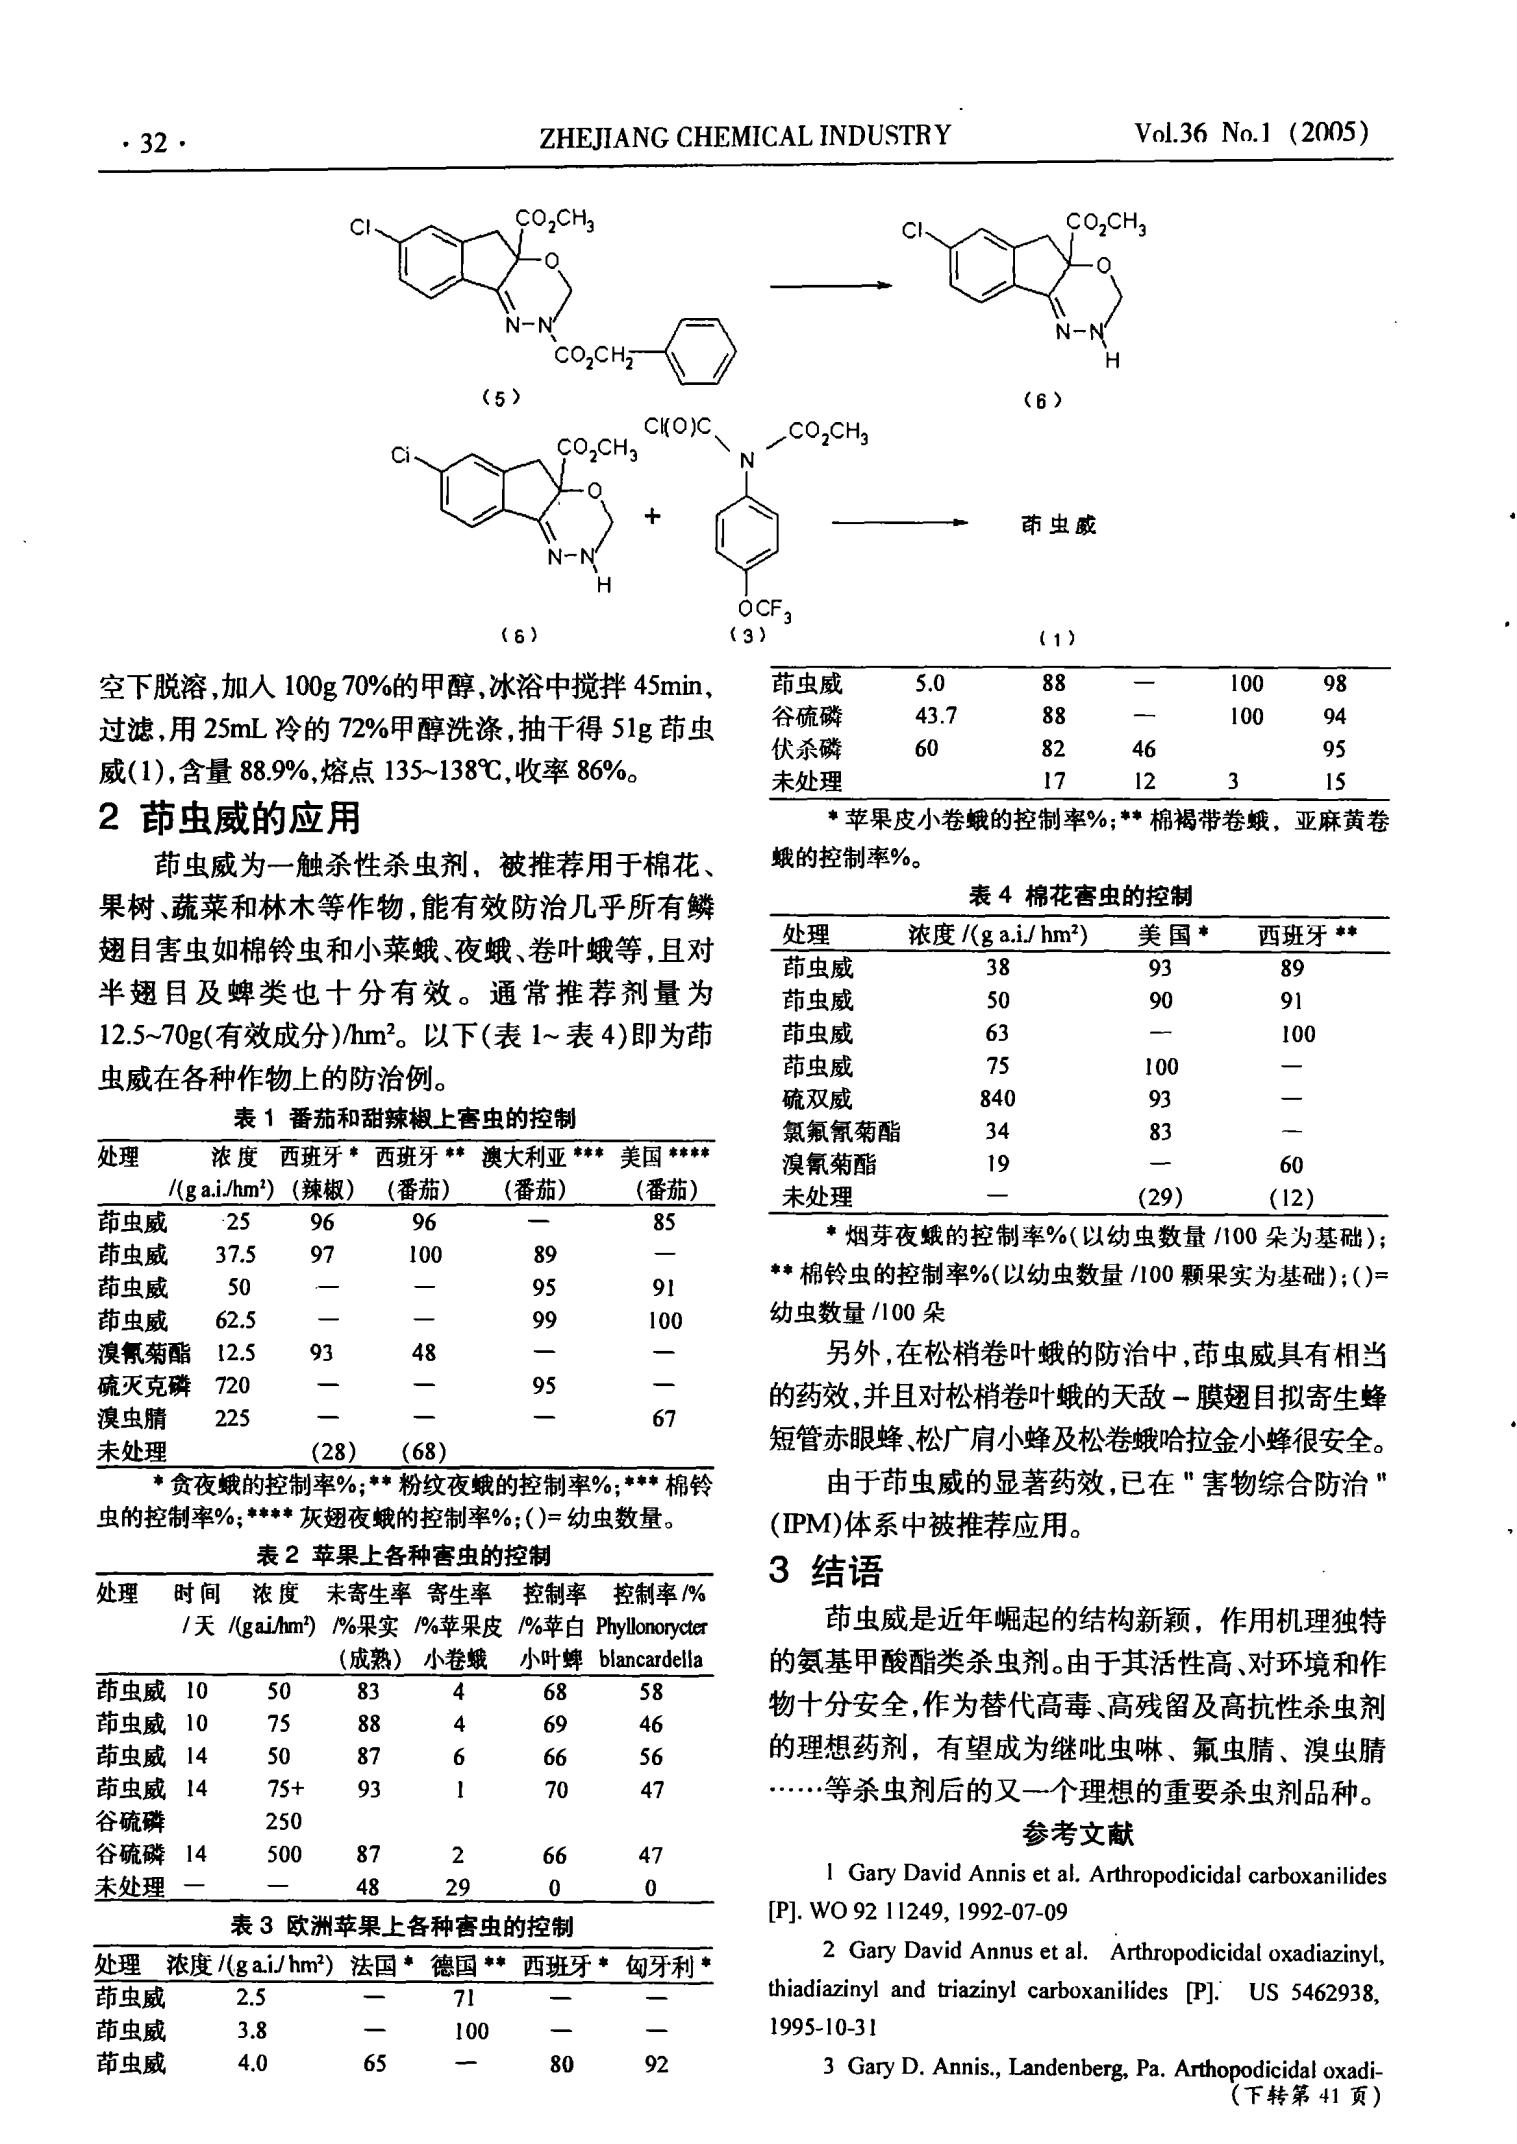 新颖氨基甲酸酯类杀虫剂——茚虫威(indoxacarb)的合成与应用